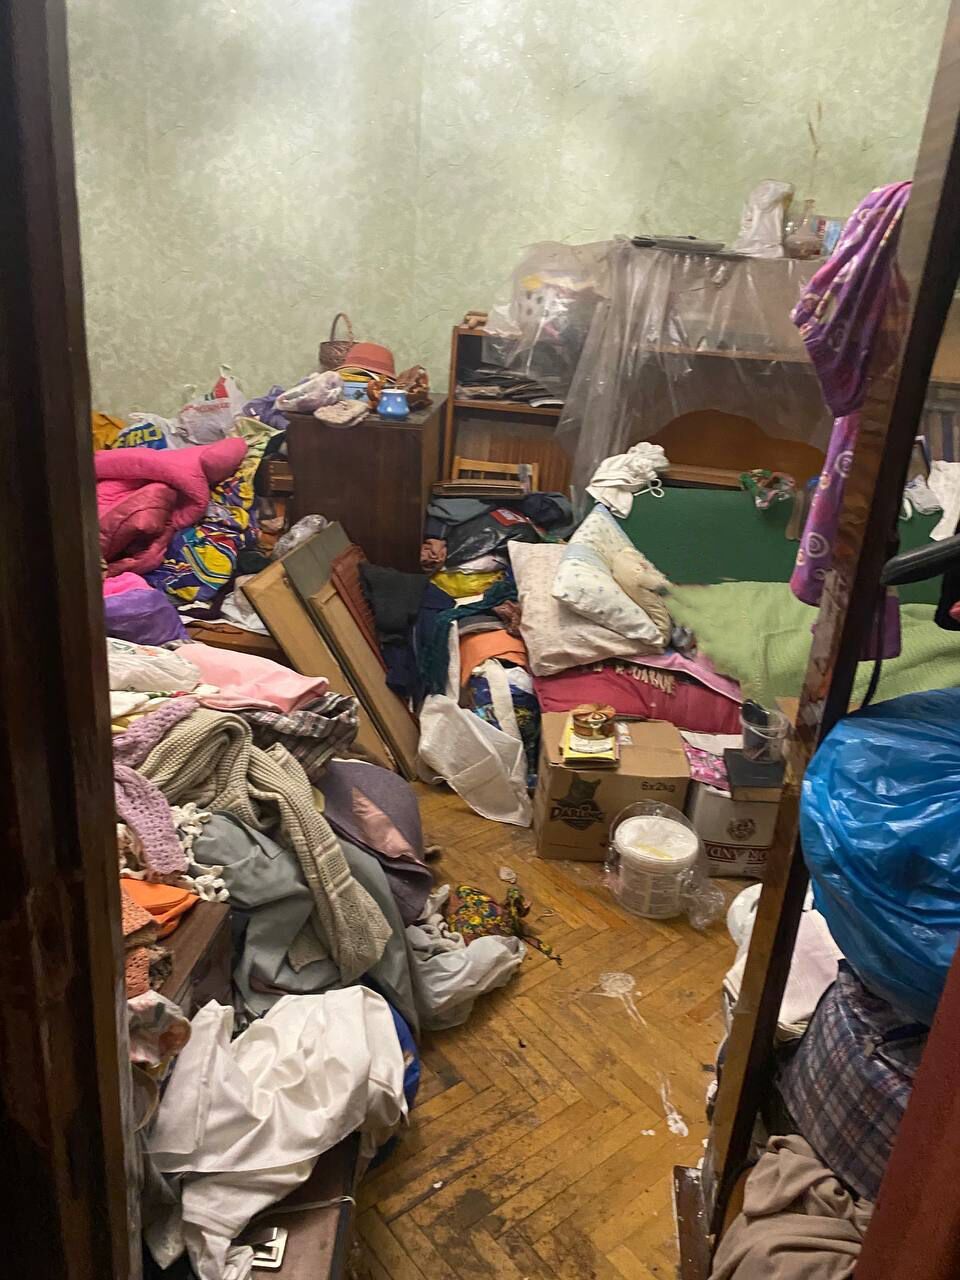 У Києві з неблагополучної родини вилучили 4-місячного малюка: жив серед безладу та антисанітарії. Фото